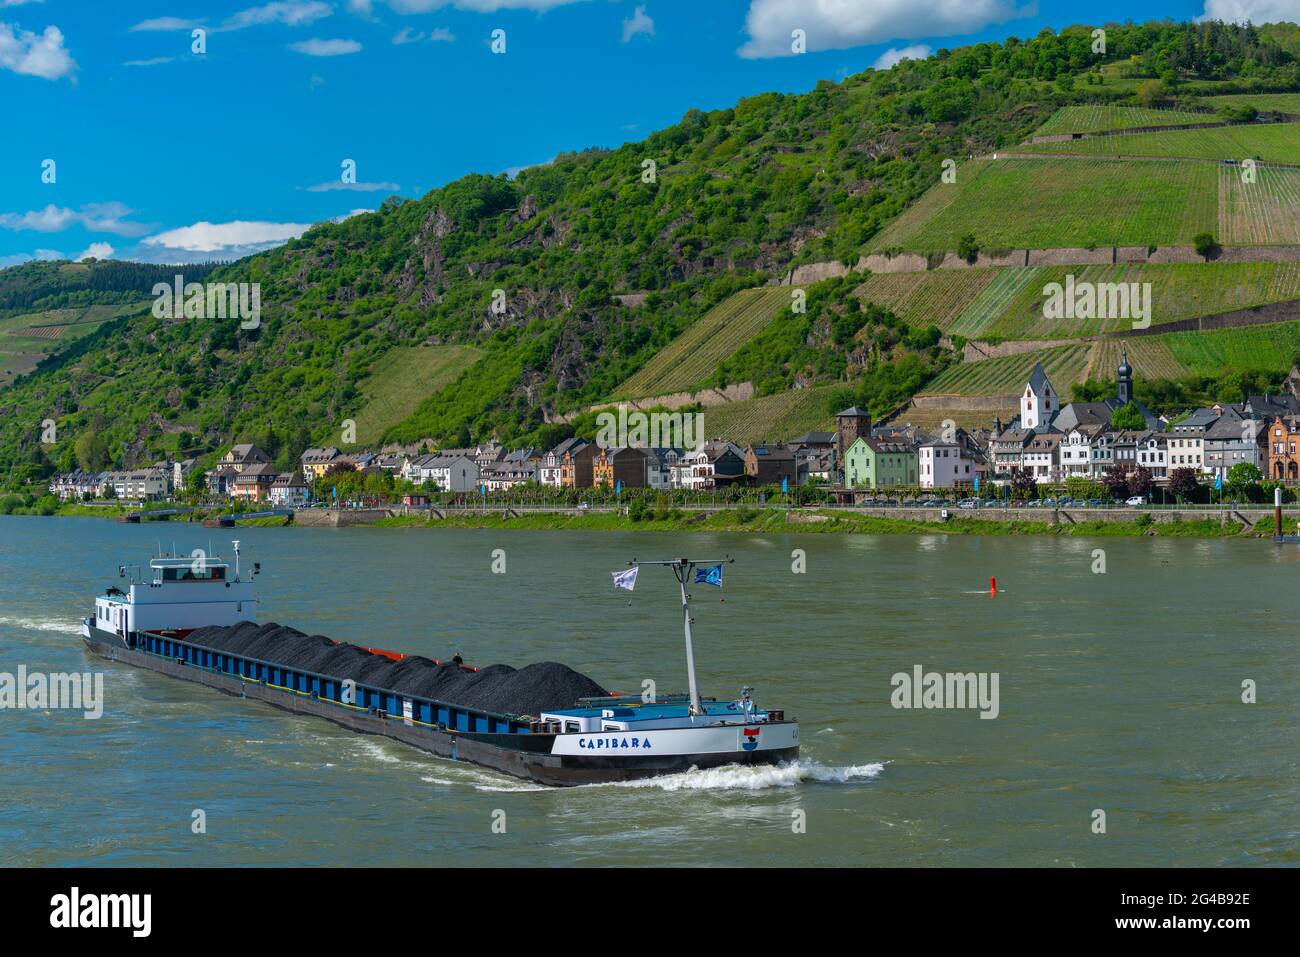 UNESCO World Heritage,  Rhine Valley, Rhineland-Palatinate, Germany Stock Photo